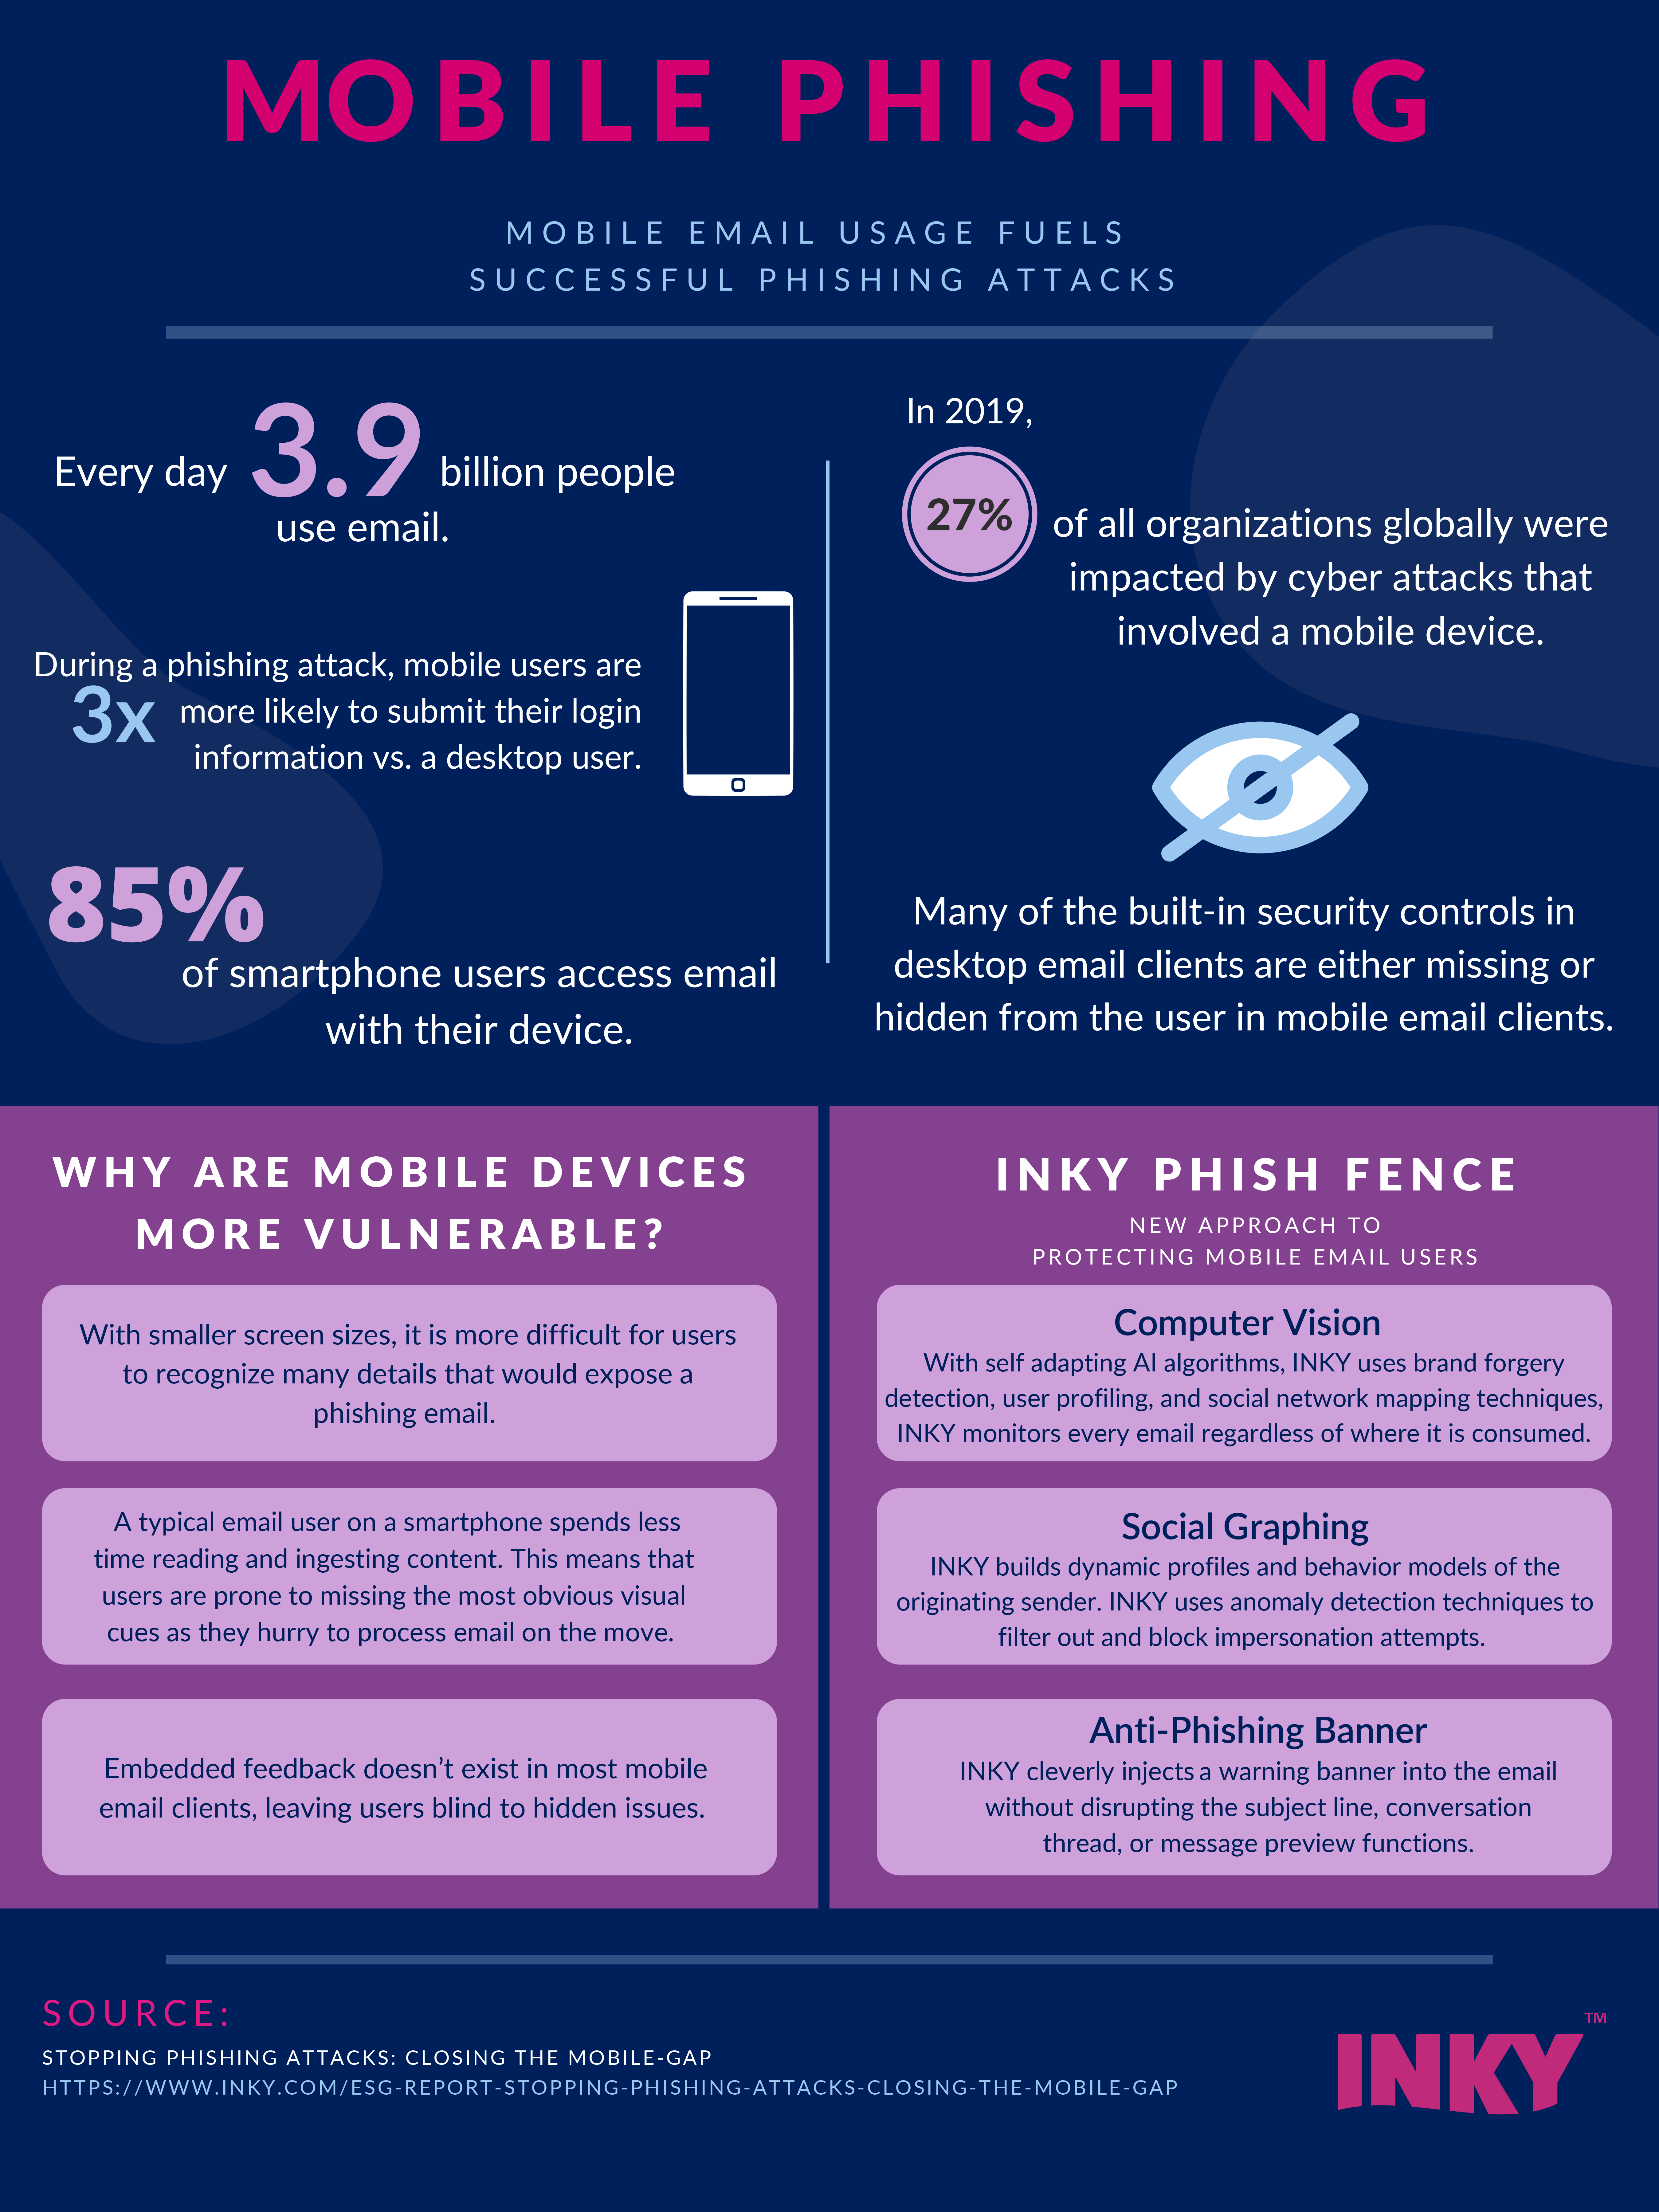 Mobile phishing-infographic-inky